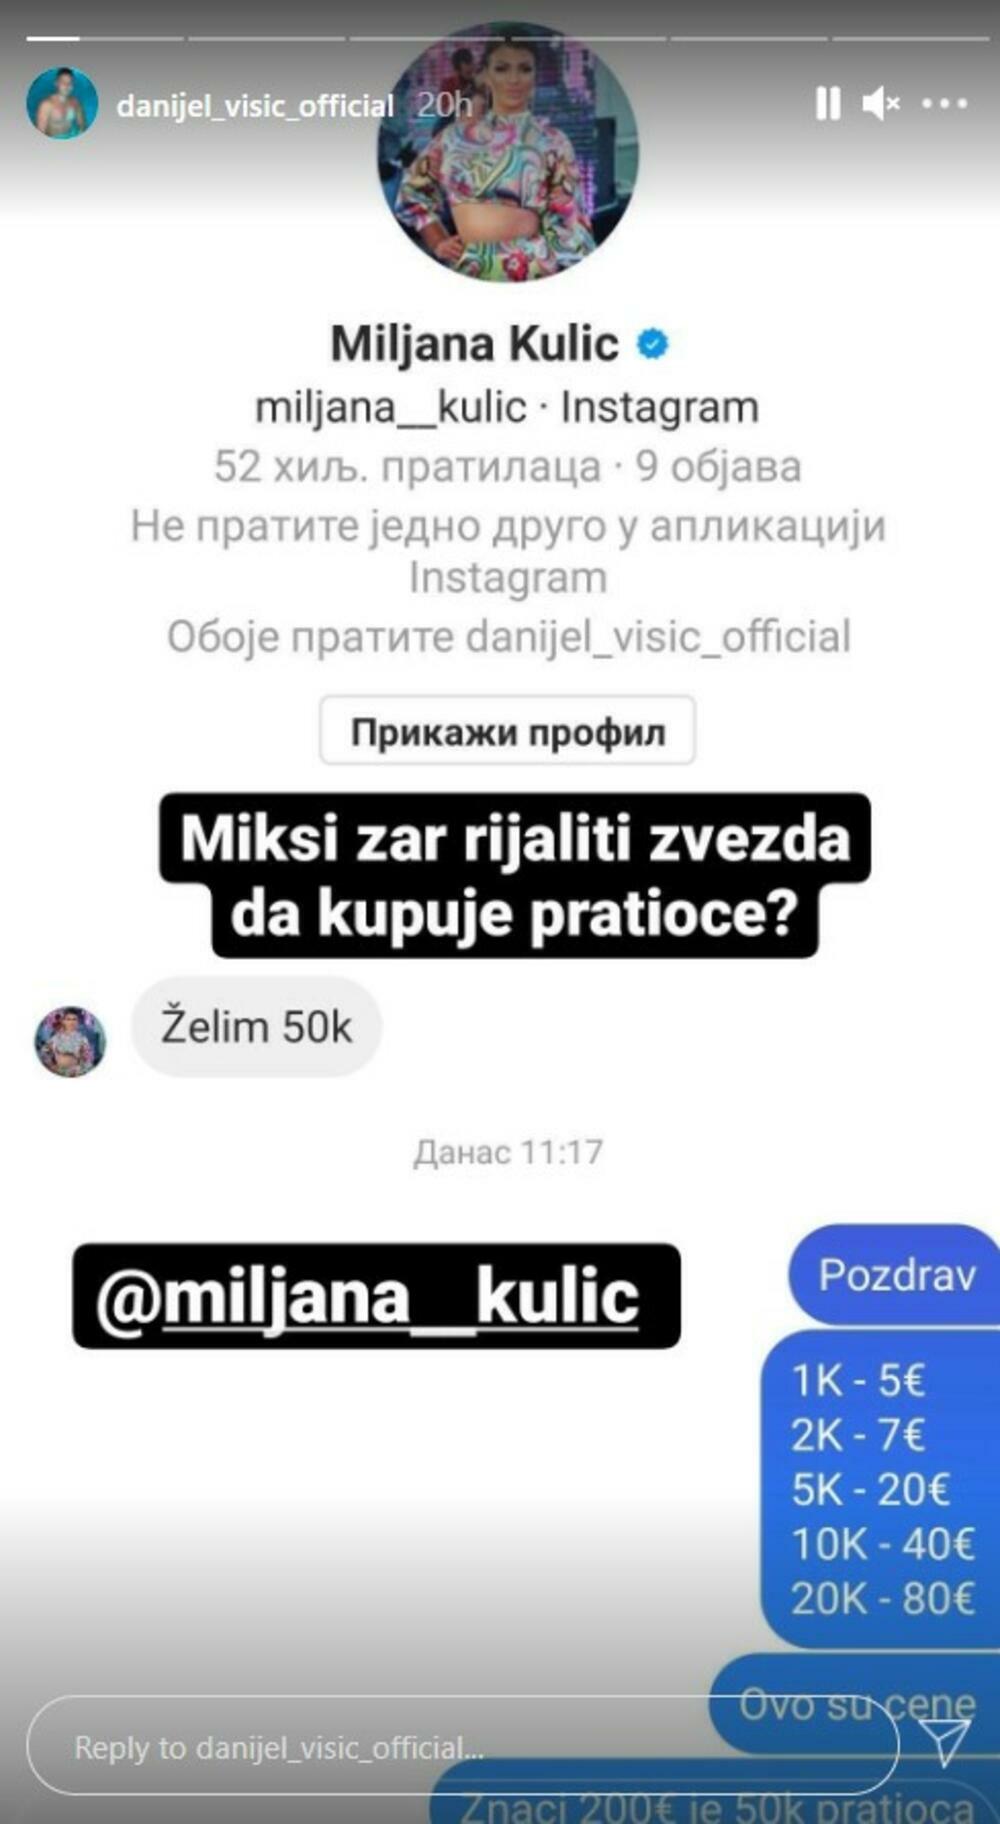 Miljana Kulić